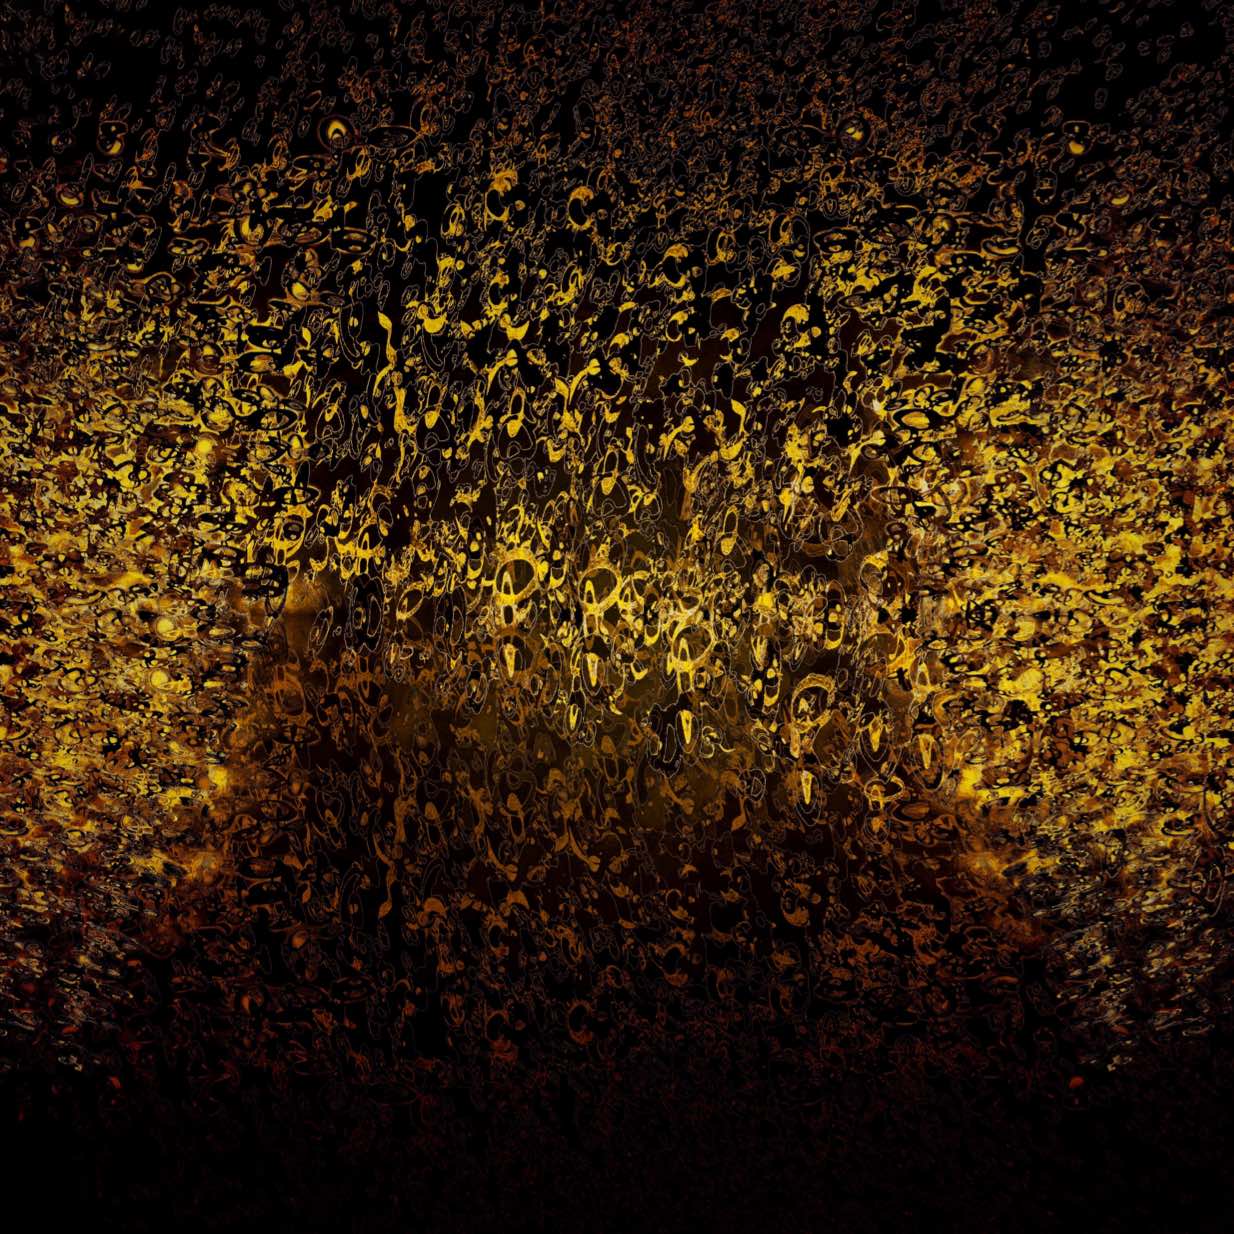 Atsushigraphの作品「Golden Rain」の画像です。